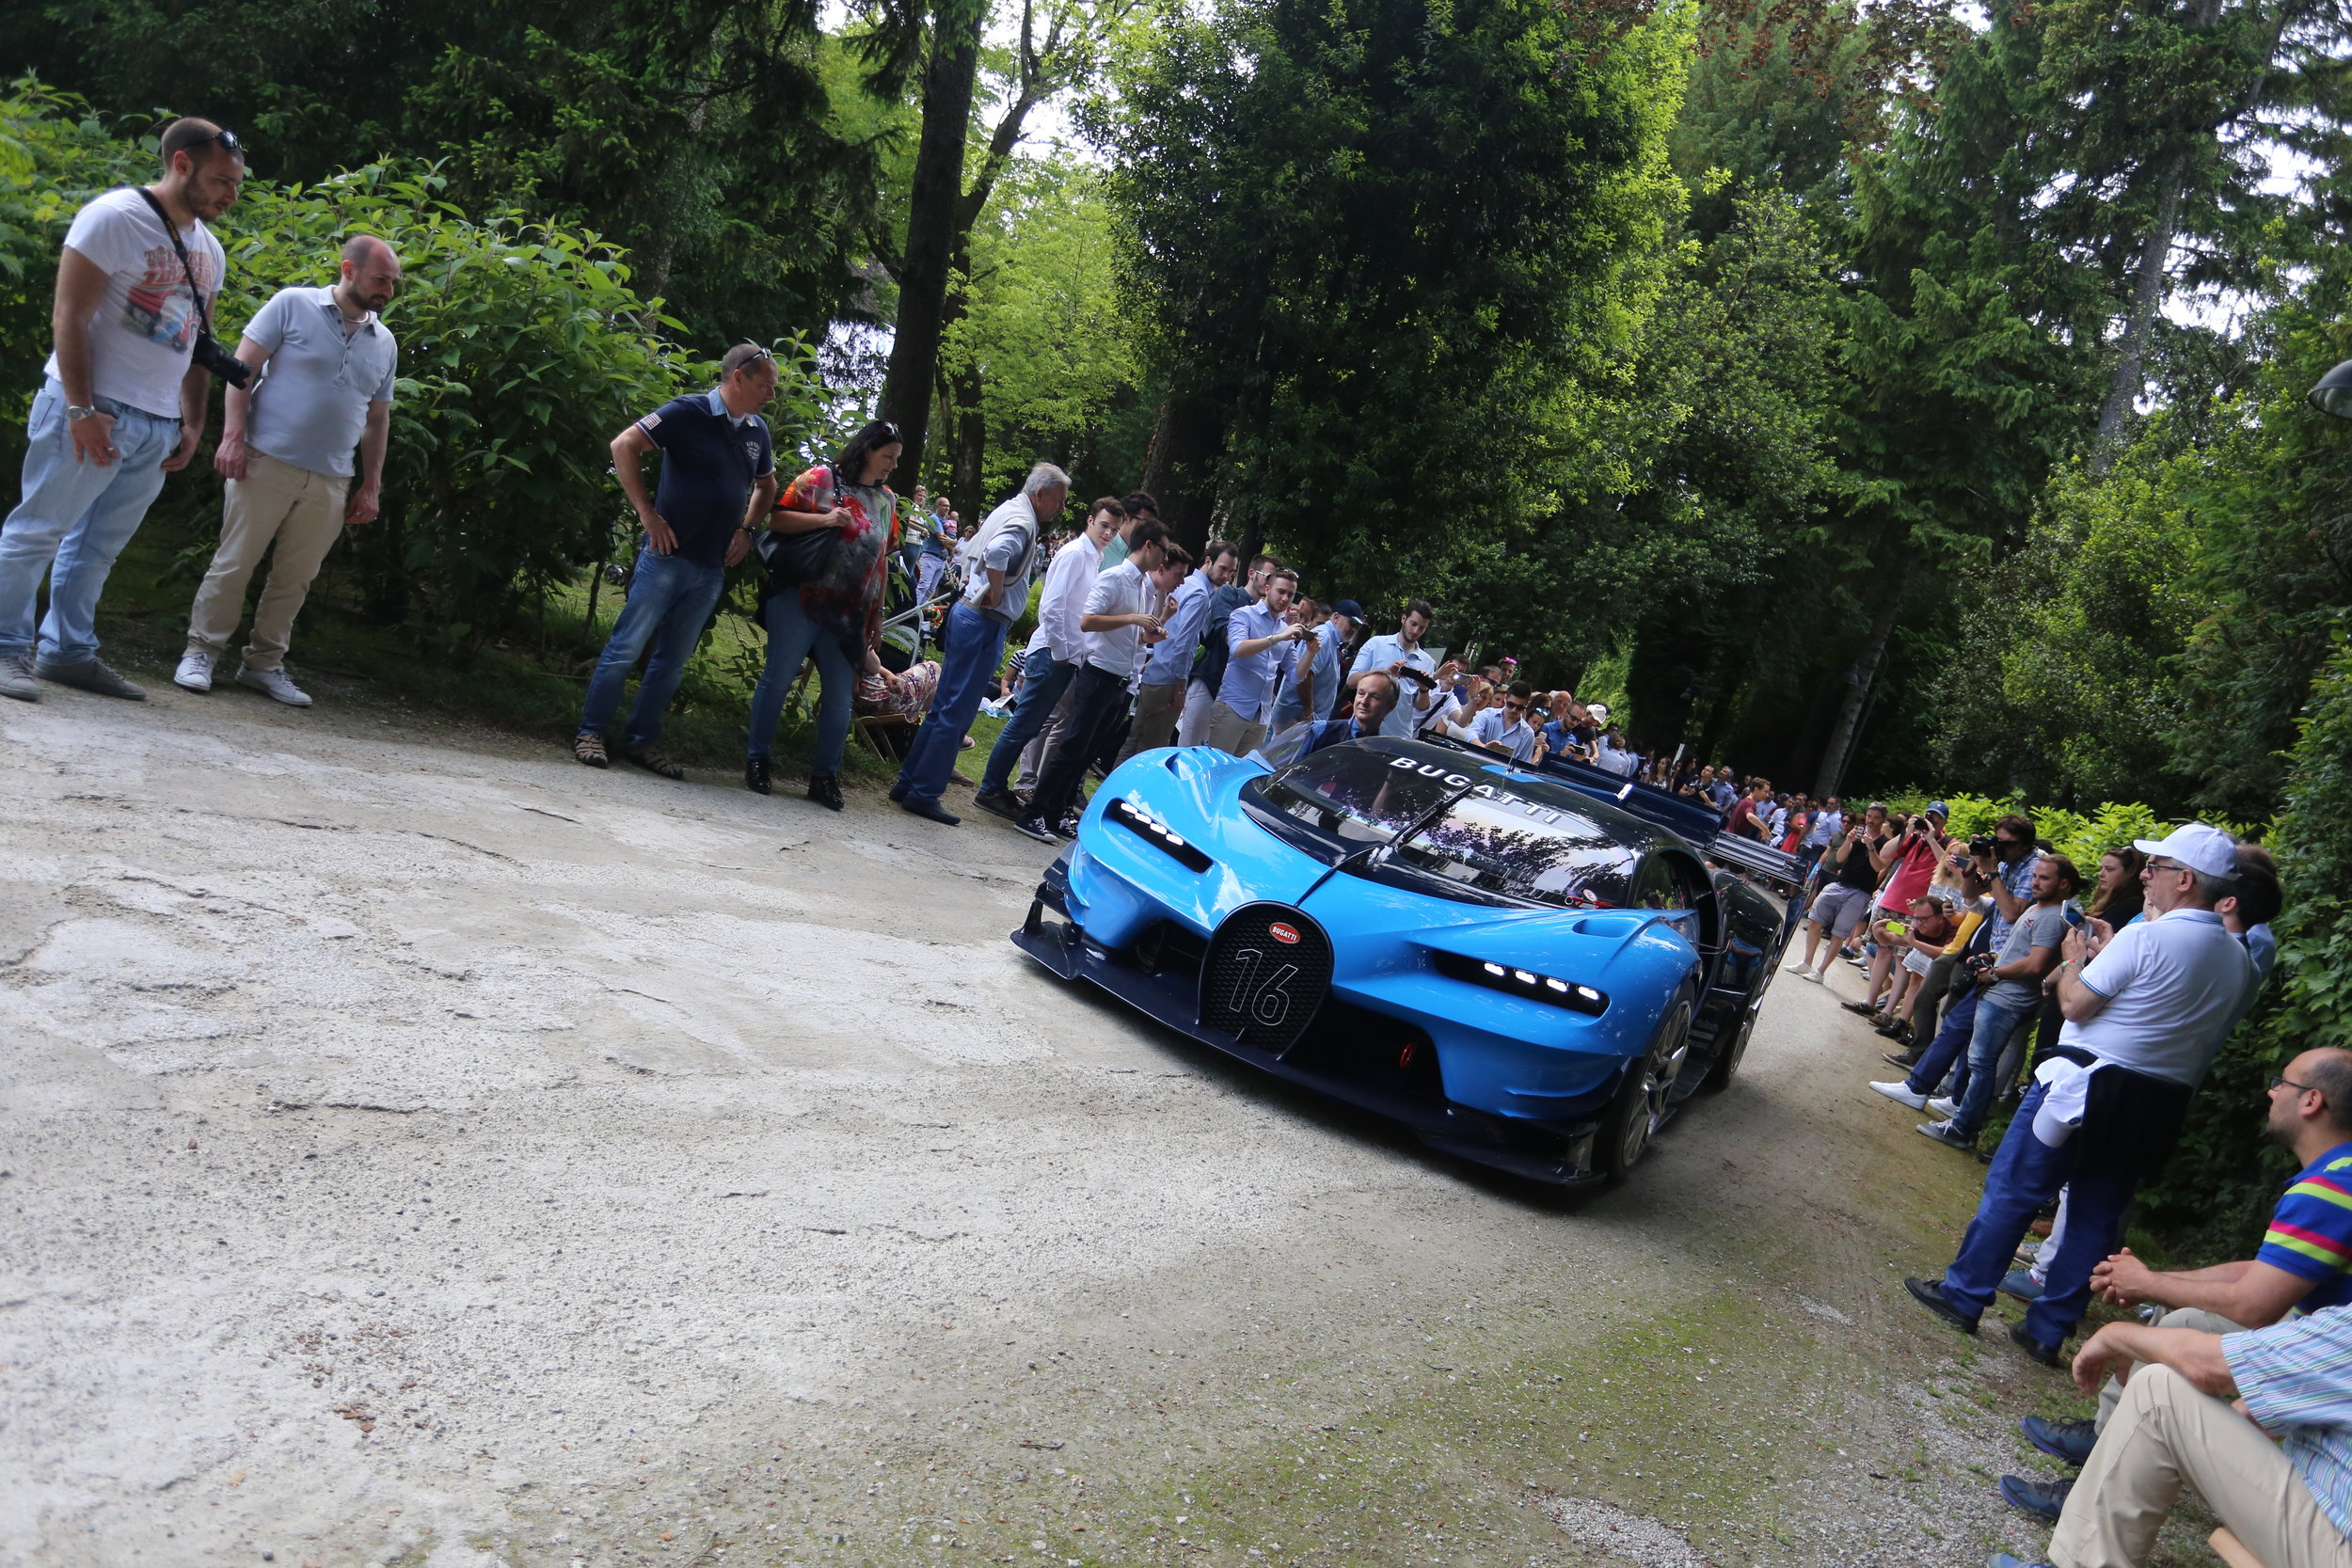 Bugatti Turismo Darragh Macchina Vission — Gran